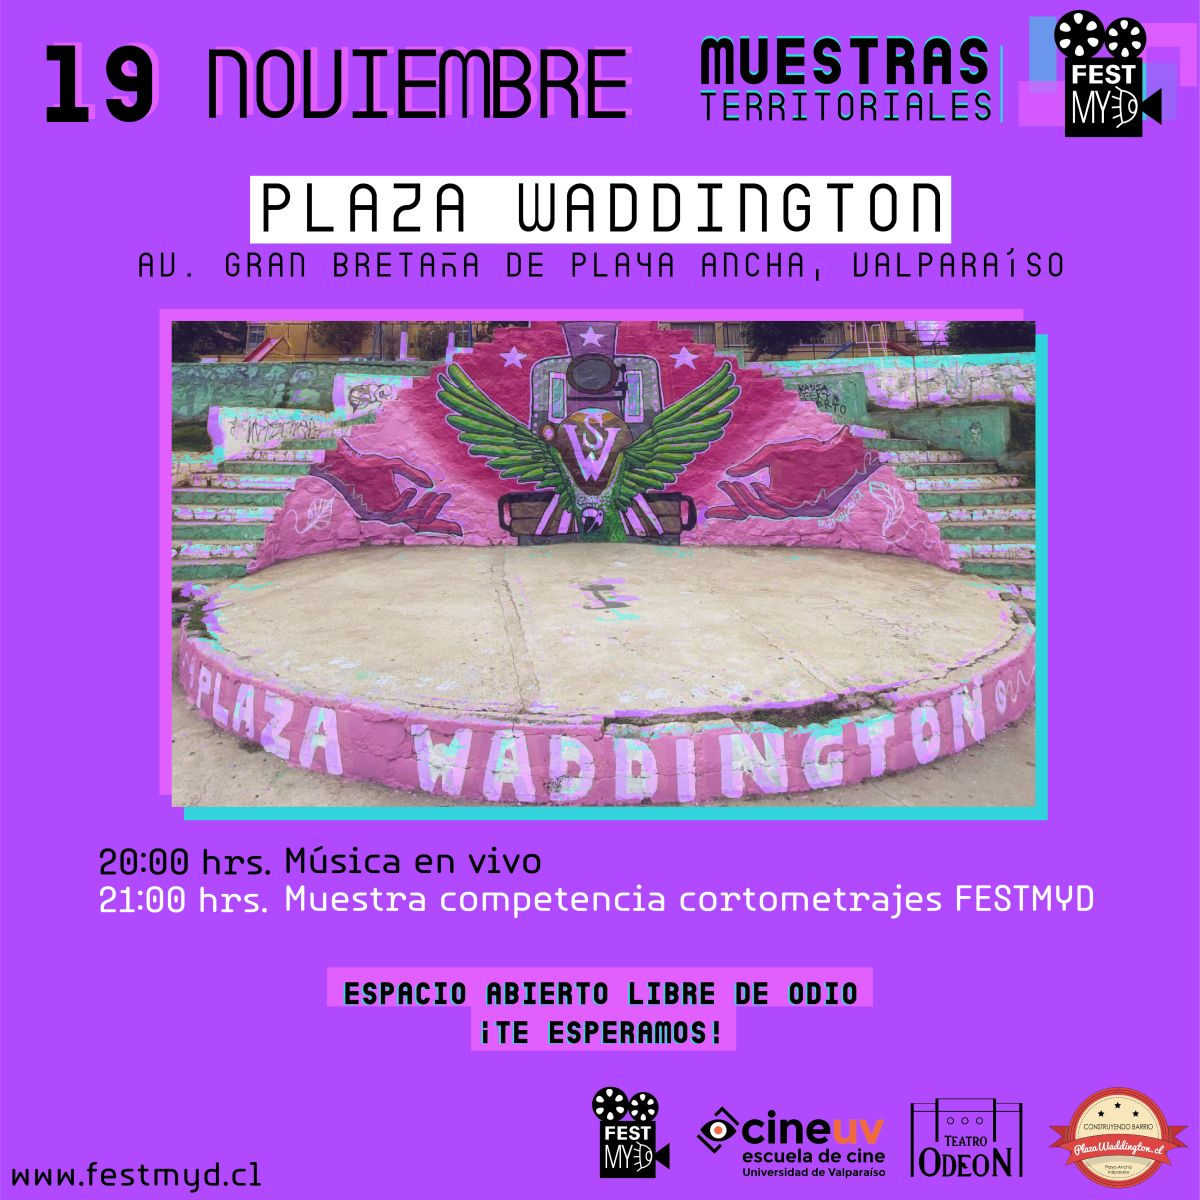 Festival de Cine de Mujeres y Diversidades parte este viernes con pantalla territorial en Plaza Waddington de Valparaíso